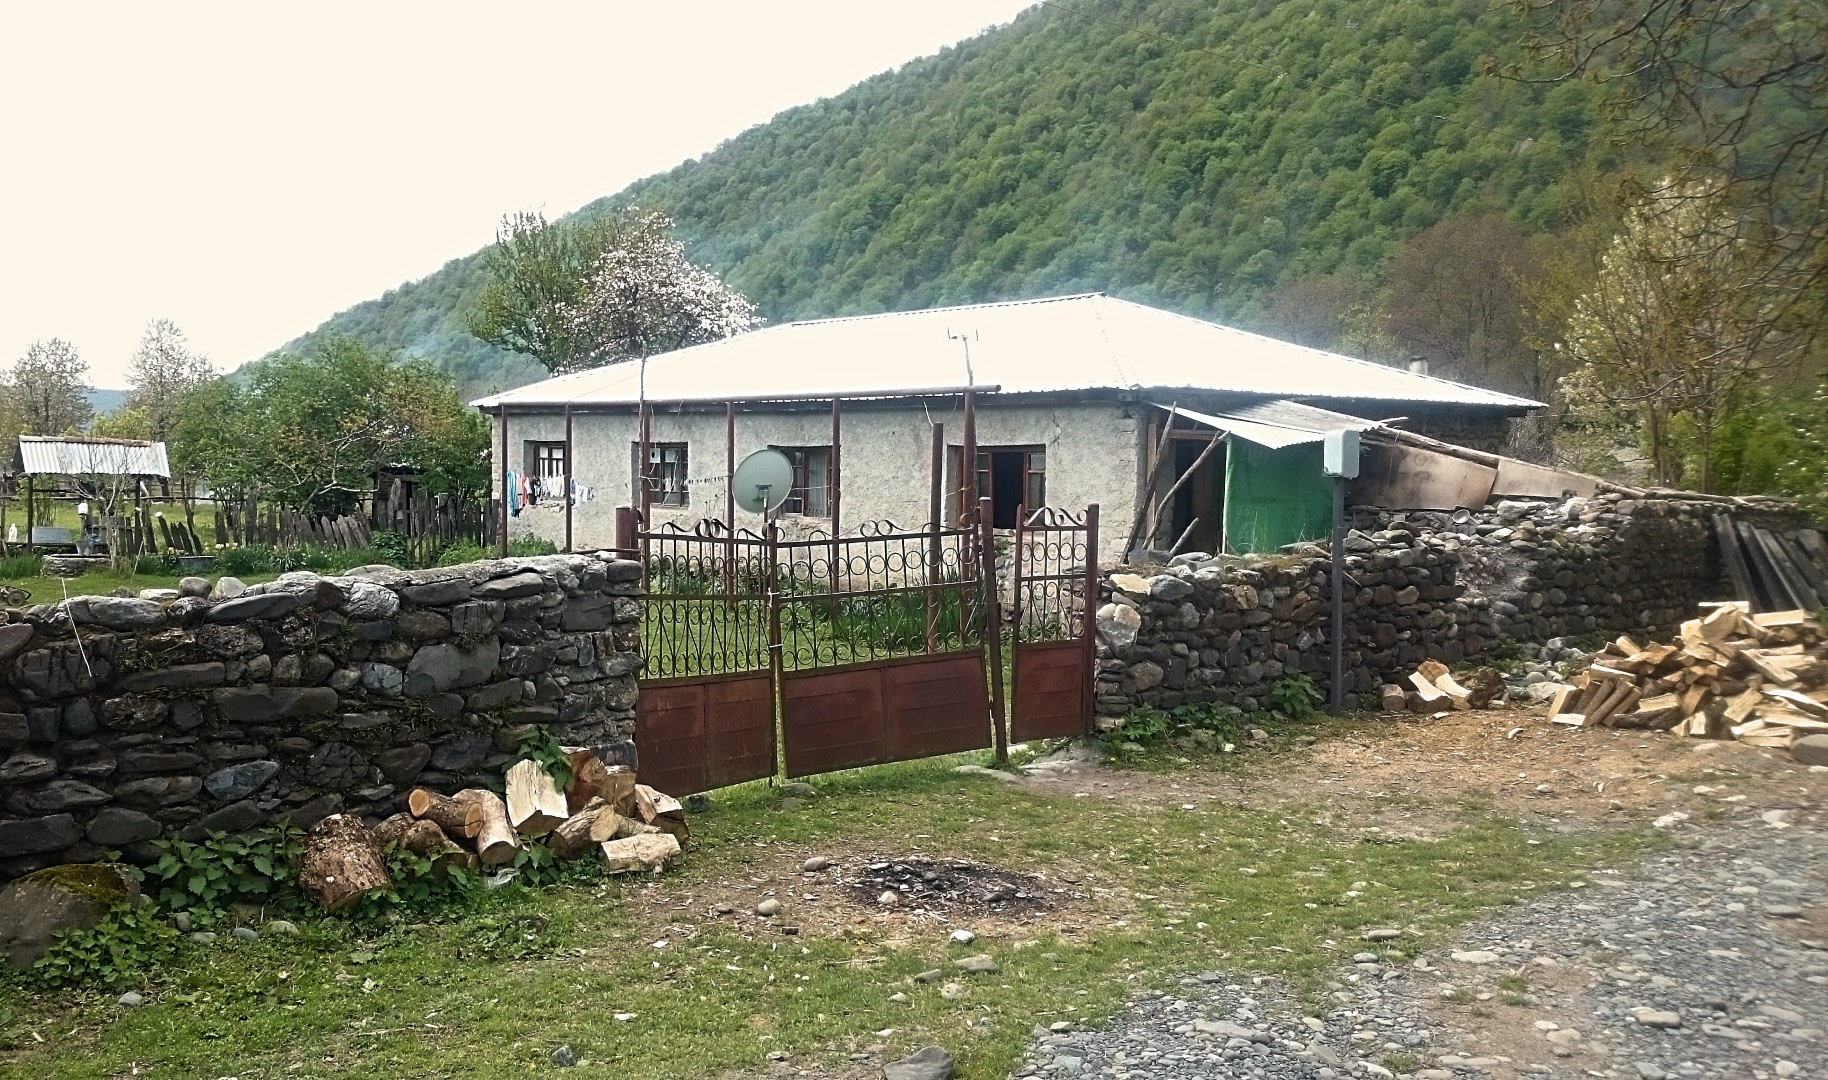 Dům Teimuraze Batirašviliho, otce dvou nejznámějších bojovníků takzvaného Islámského státu, kteří vyrůstali v gruzínském údolí Pankisi.